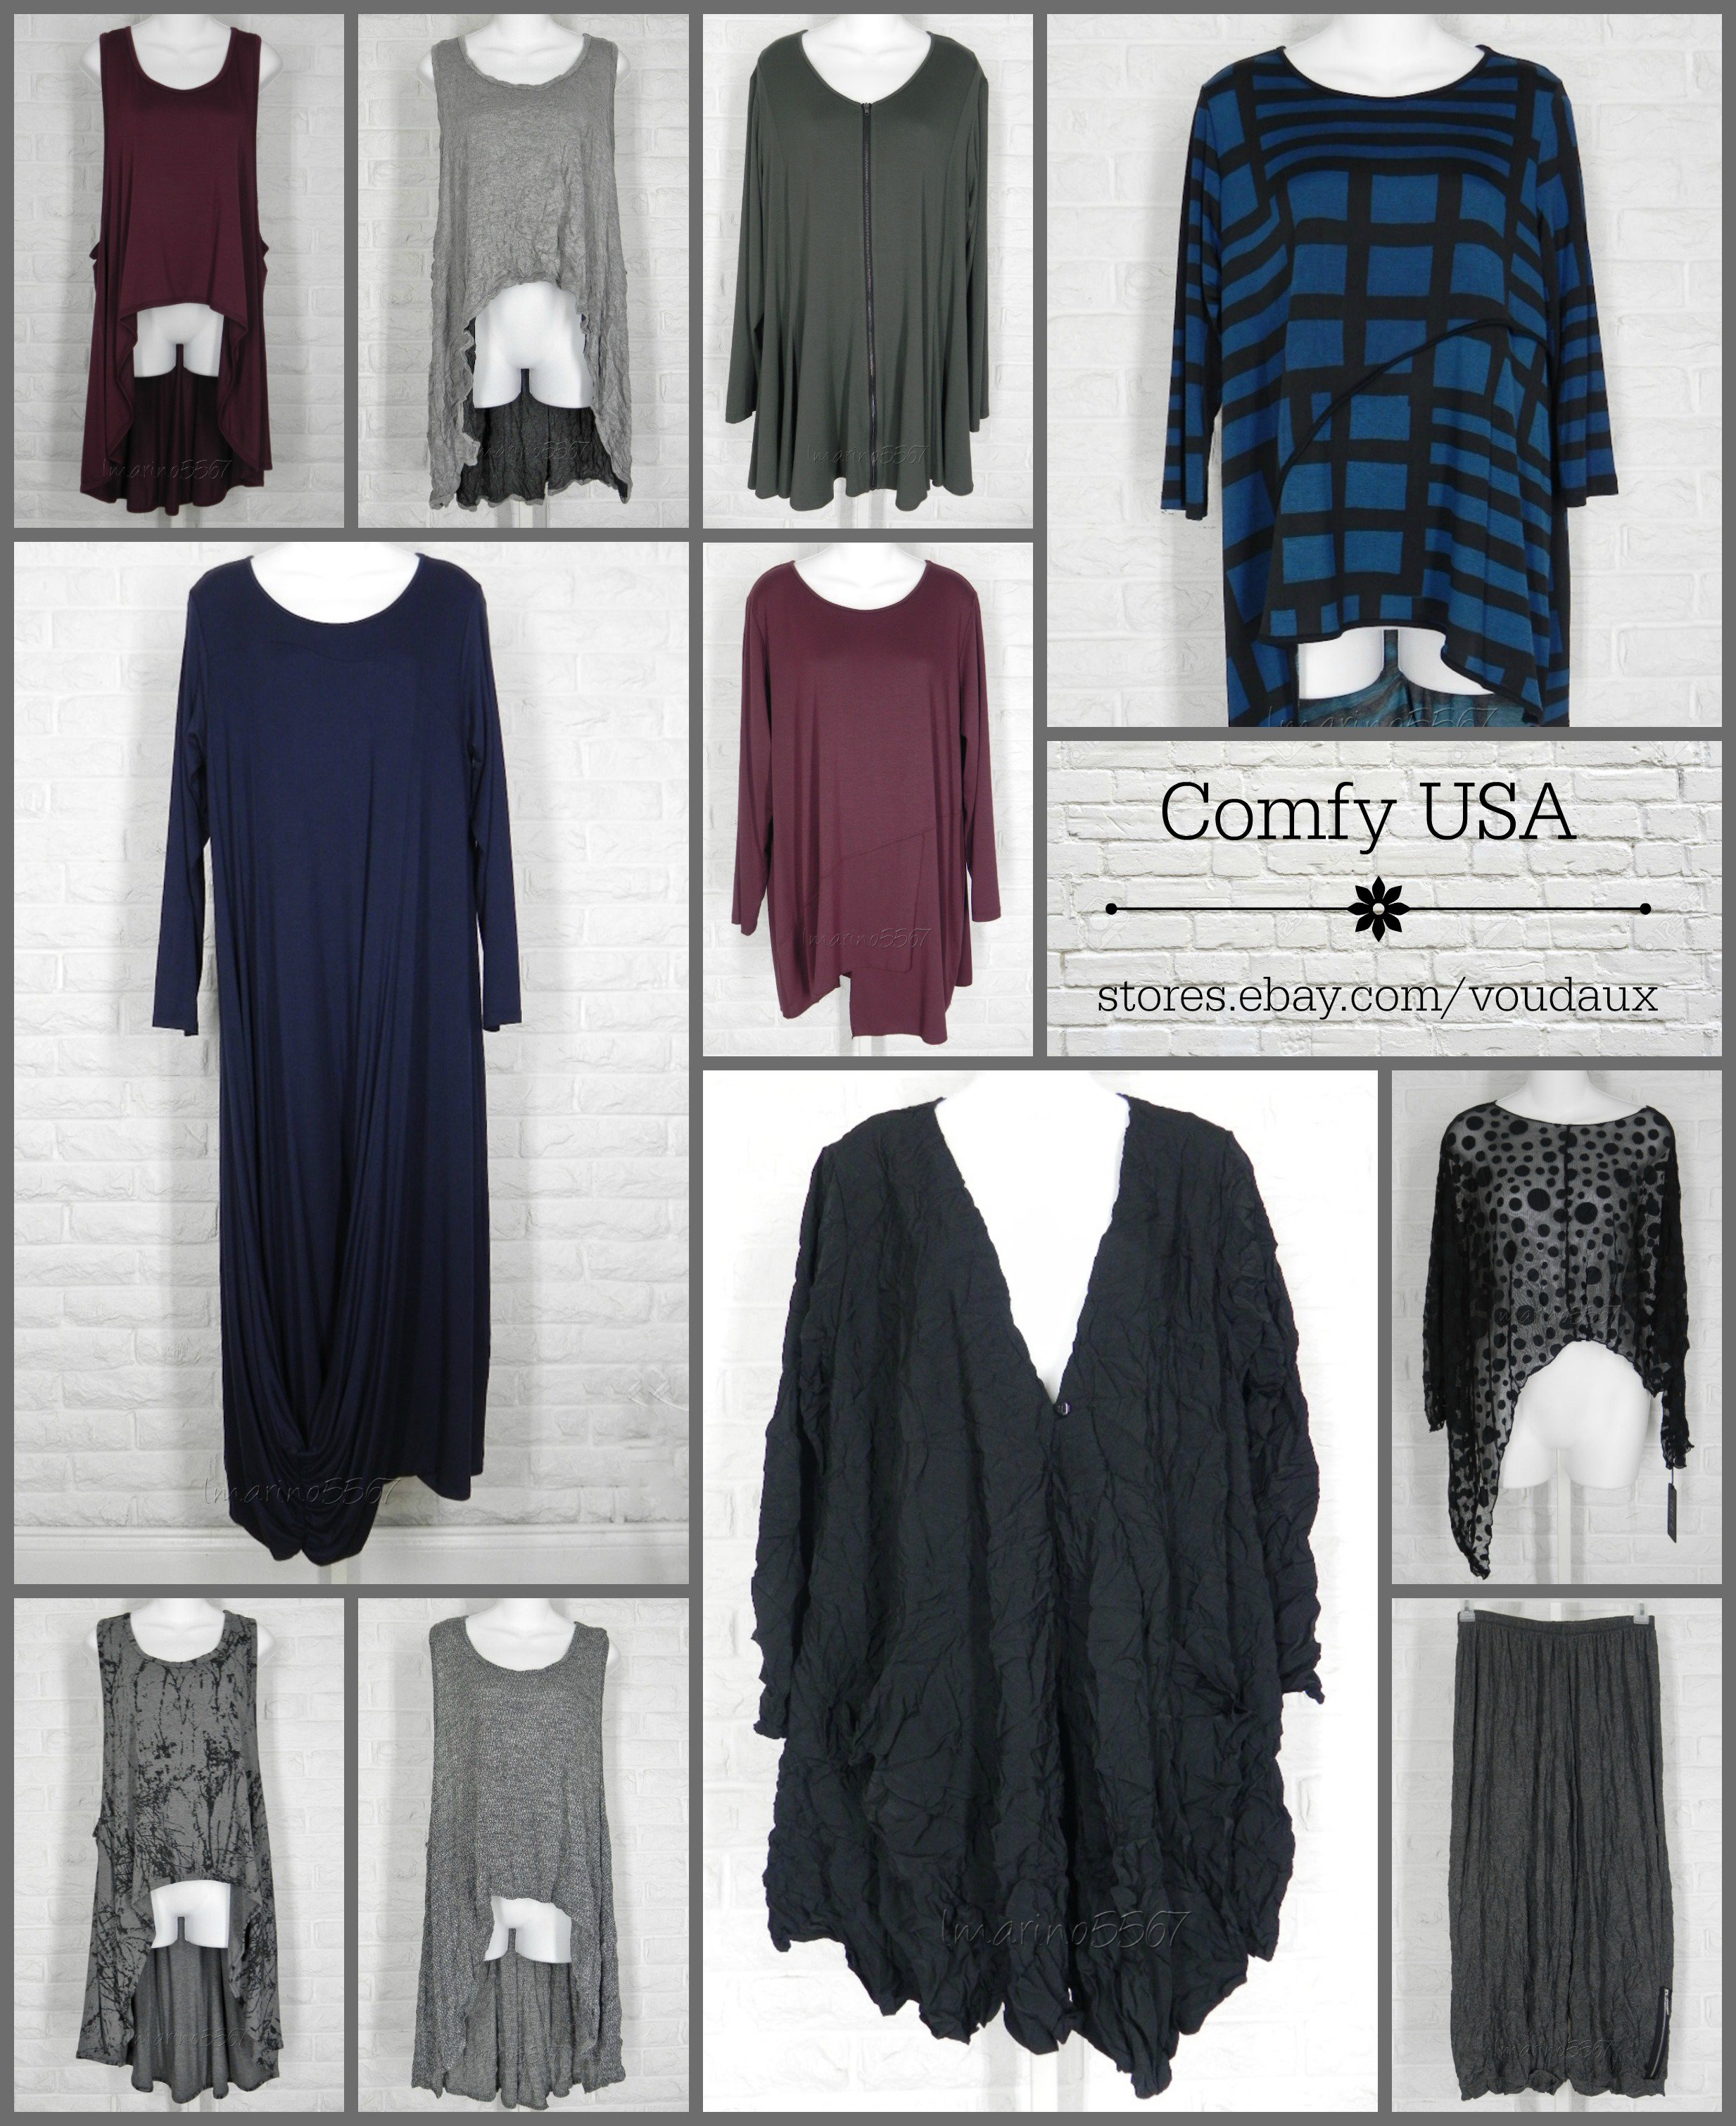 Lisa on X: Comfy USA #dresses #toppers #tunics #jacket #pants   # #lagenlook #clothing #fashion #giftsforher  #ComfyUSA  / X